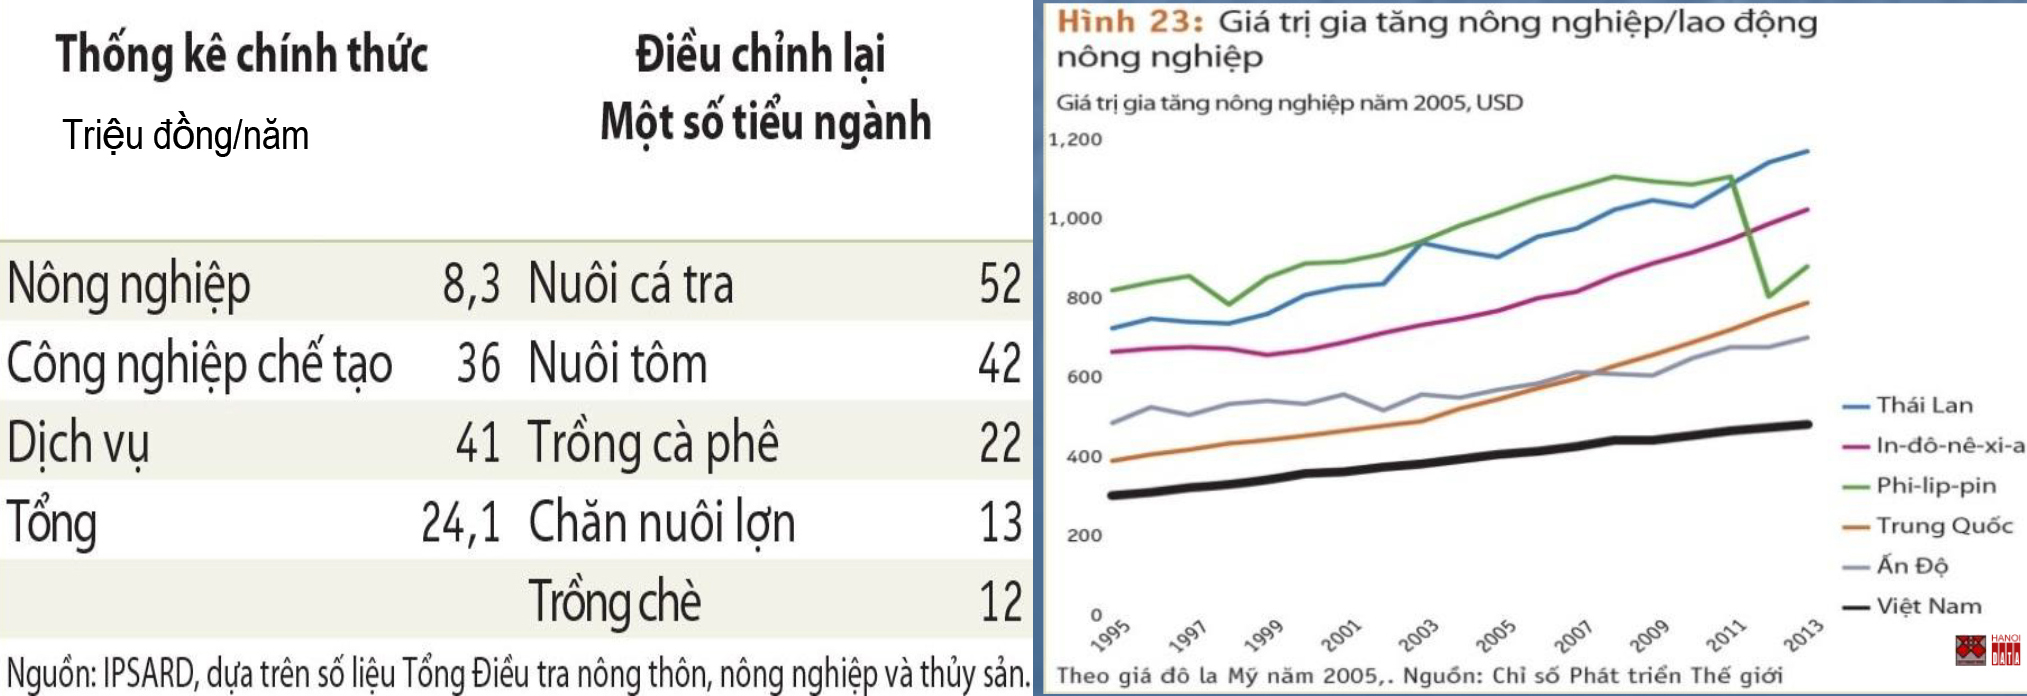 Nông nghiệp Việt Nam: Low hiệu quả, thu nhập lao động nông nghiệp, low value gia tâng (so với các quốc gia châu Á)